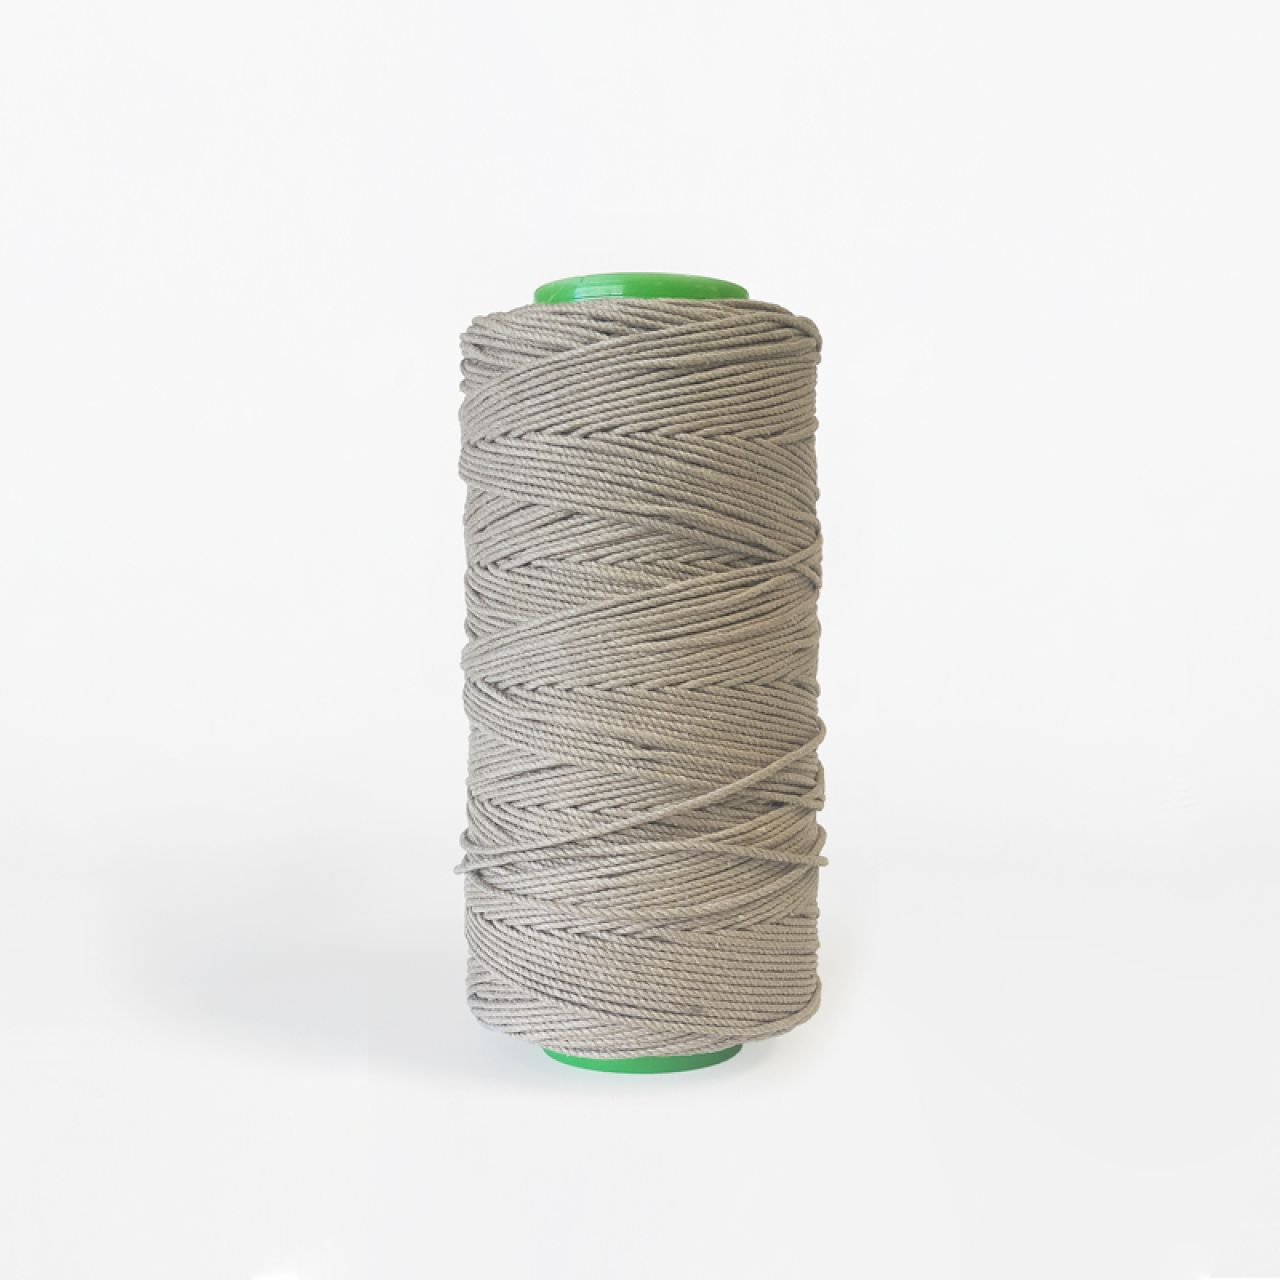 Abafil per una moda sostenibile: un filato effetto lino che nasce dal riciclo del cotone